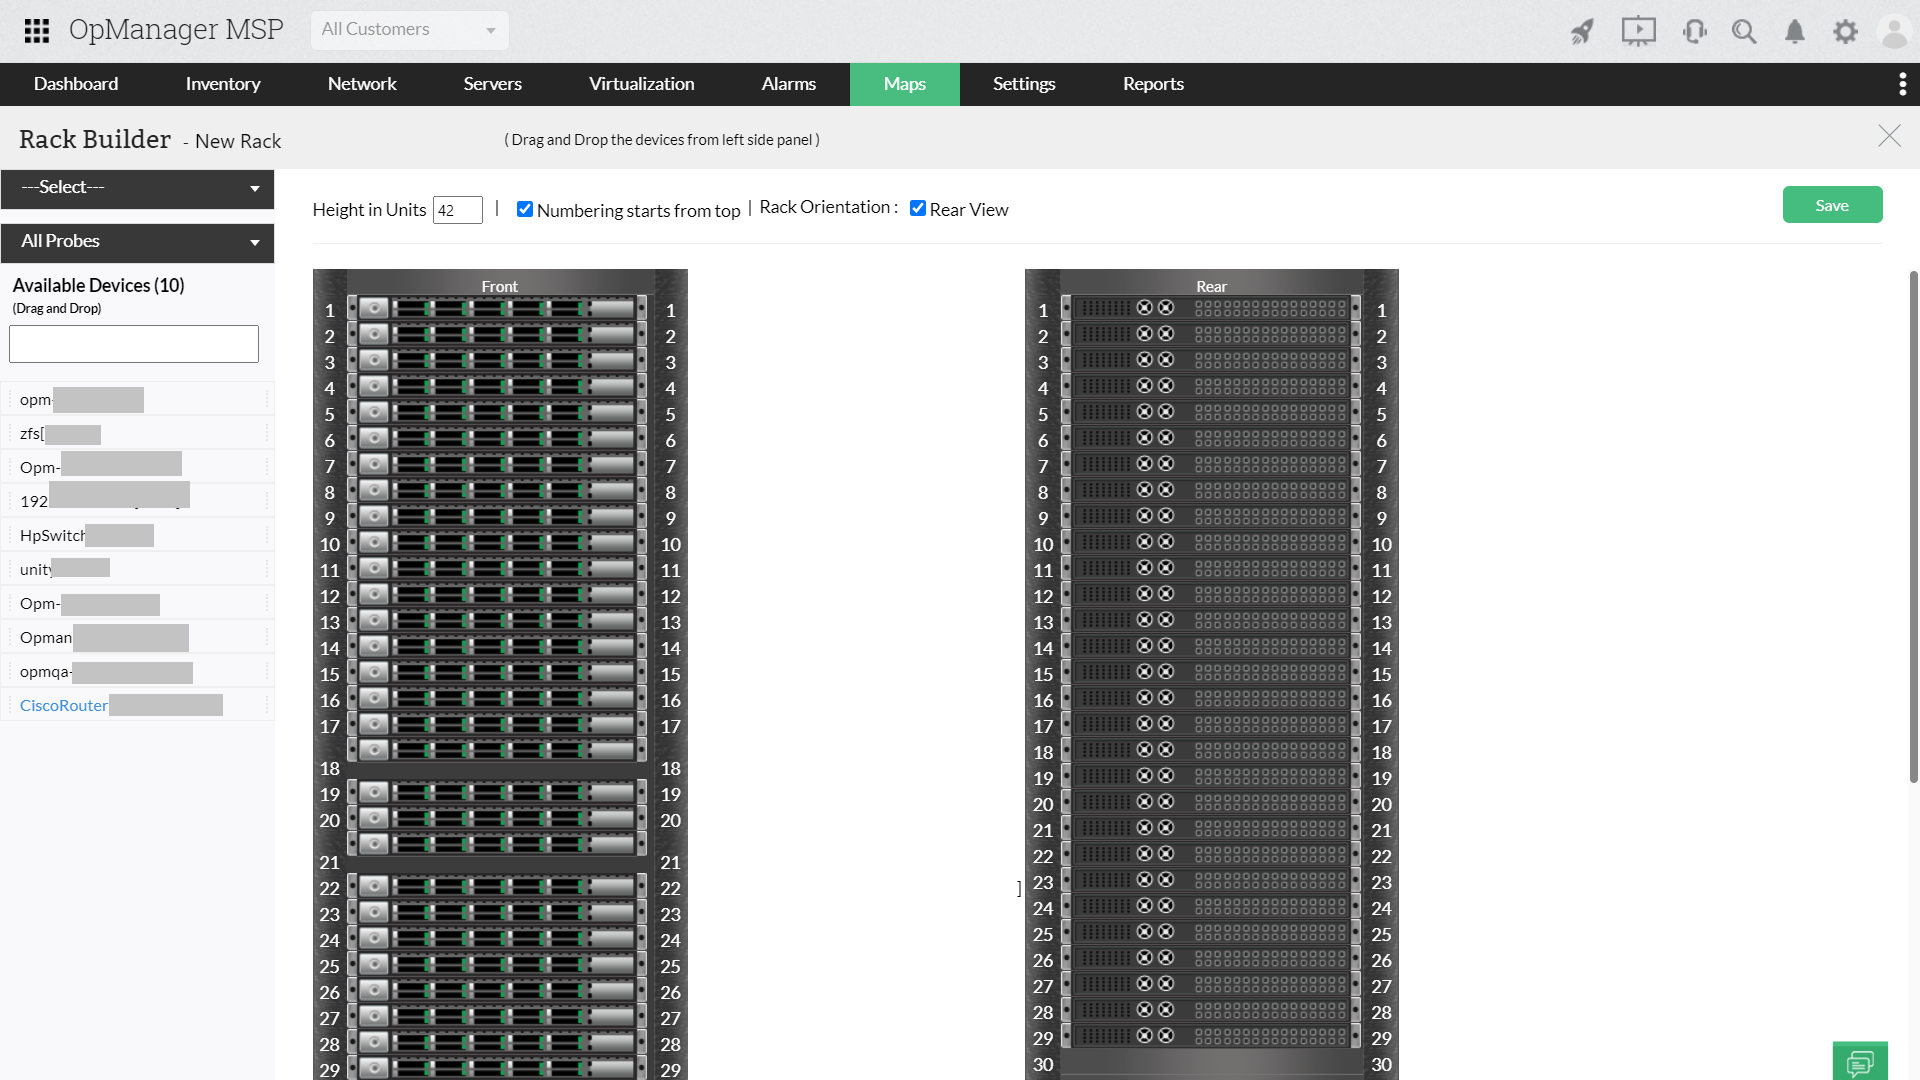 Vista de Rack - ManageEngine OpManager MSP